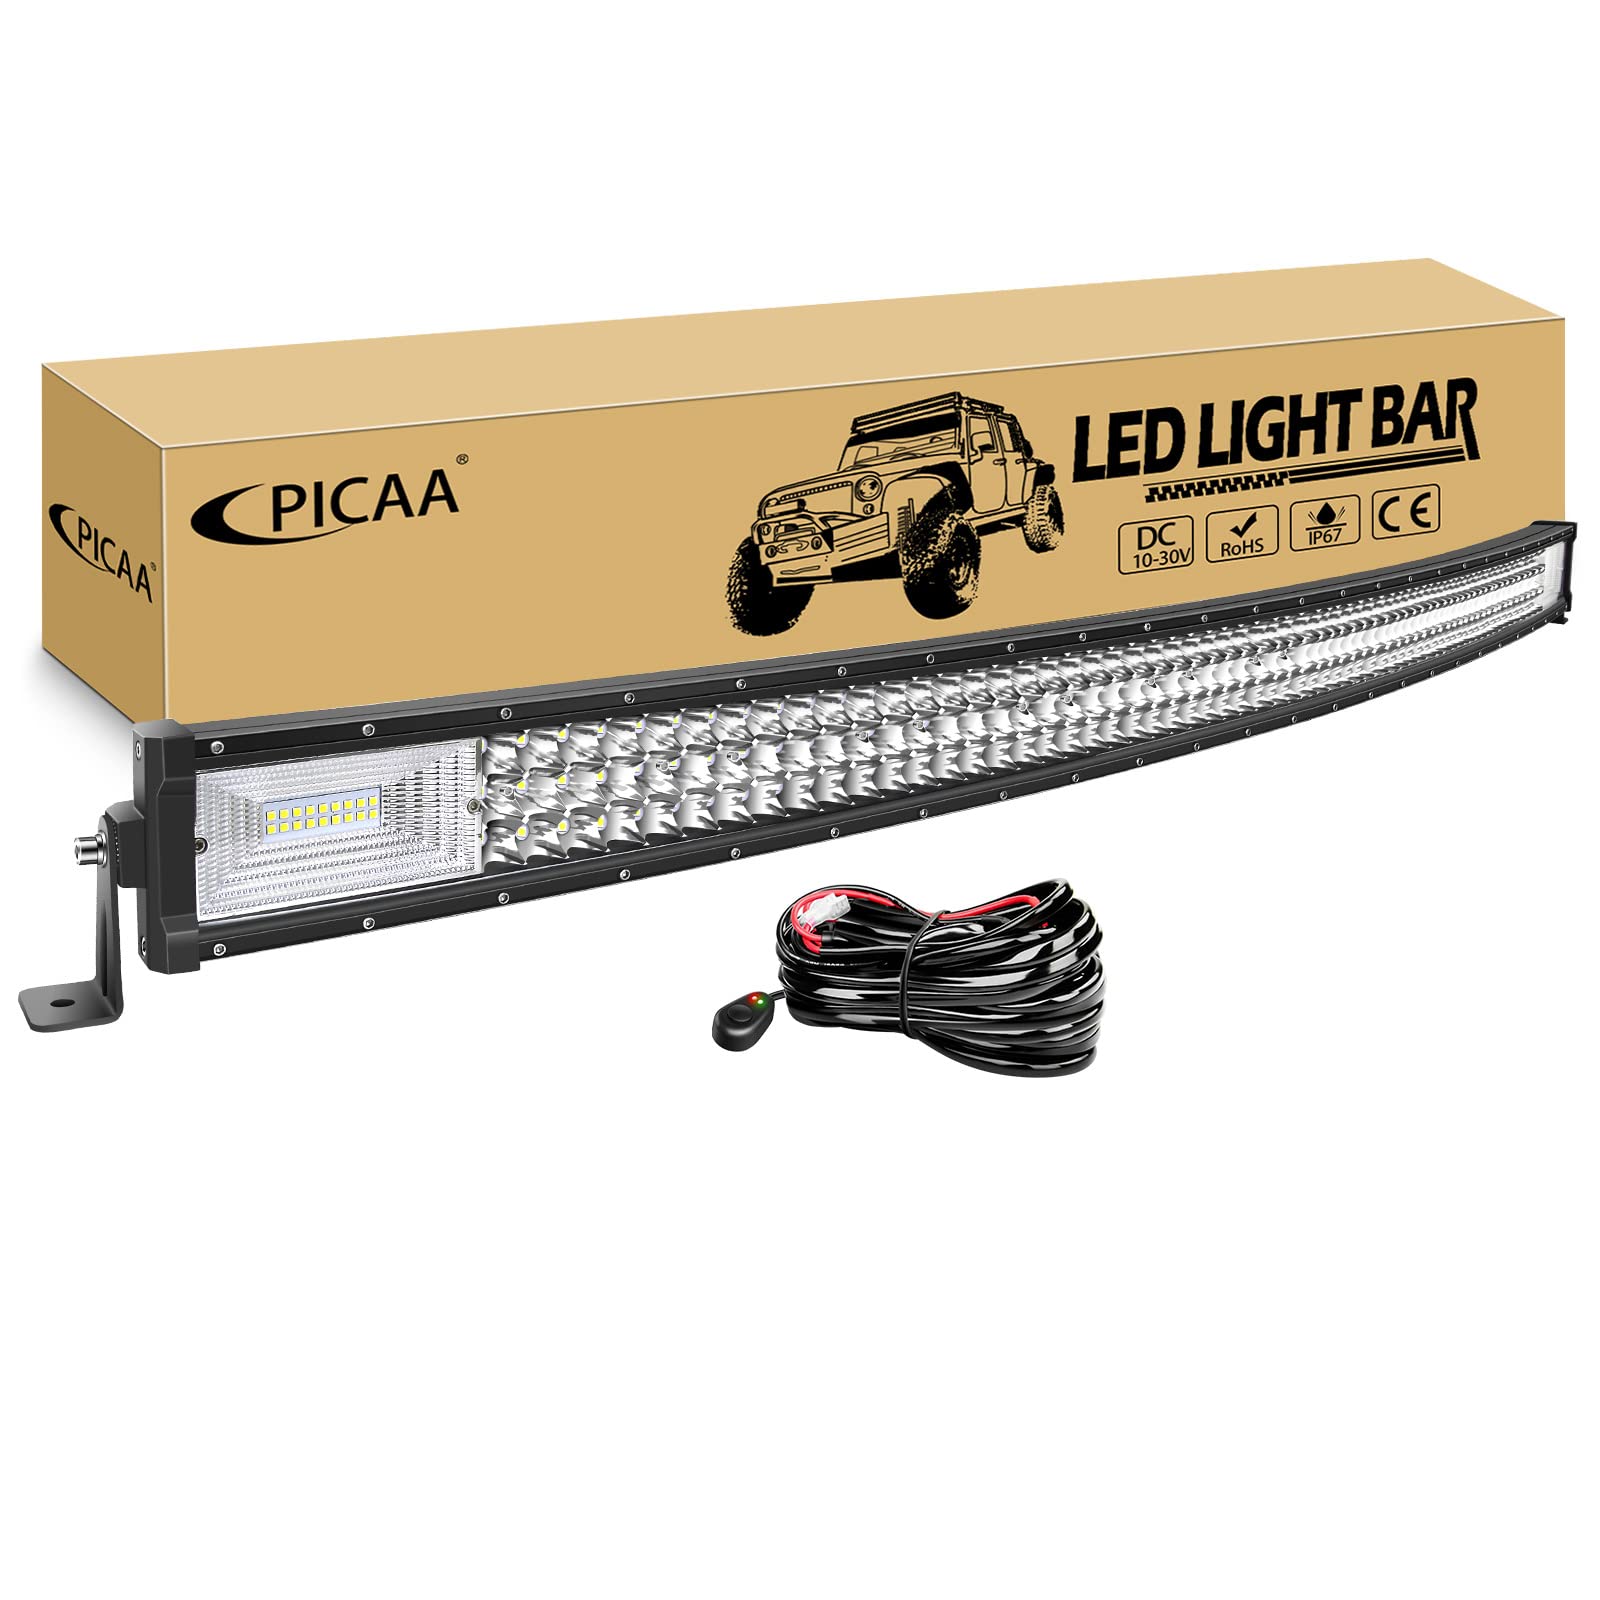 PICAA Gebogene LED Lightbar 52 Zoll 675W mit 12V Kabelbaum Kit, Tri-Reihen Spot Flood Combo Lichtbalken Arbeitsscheinwerfer für Auto Offroad 4X4 SUV LKW ATV von PICAA